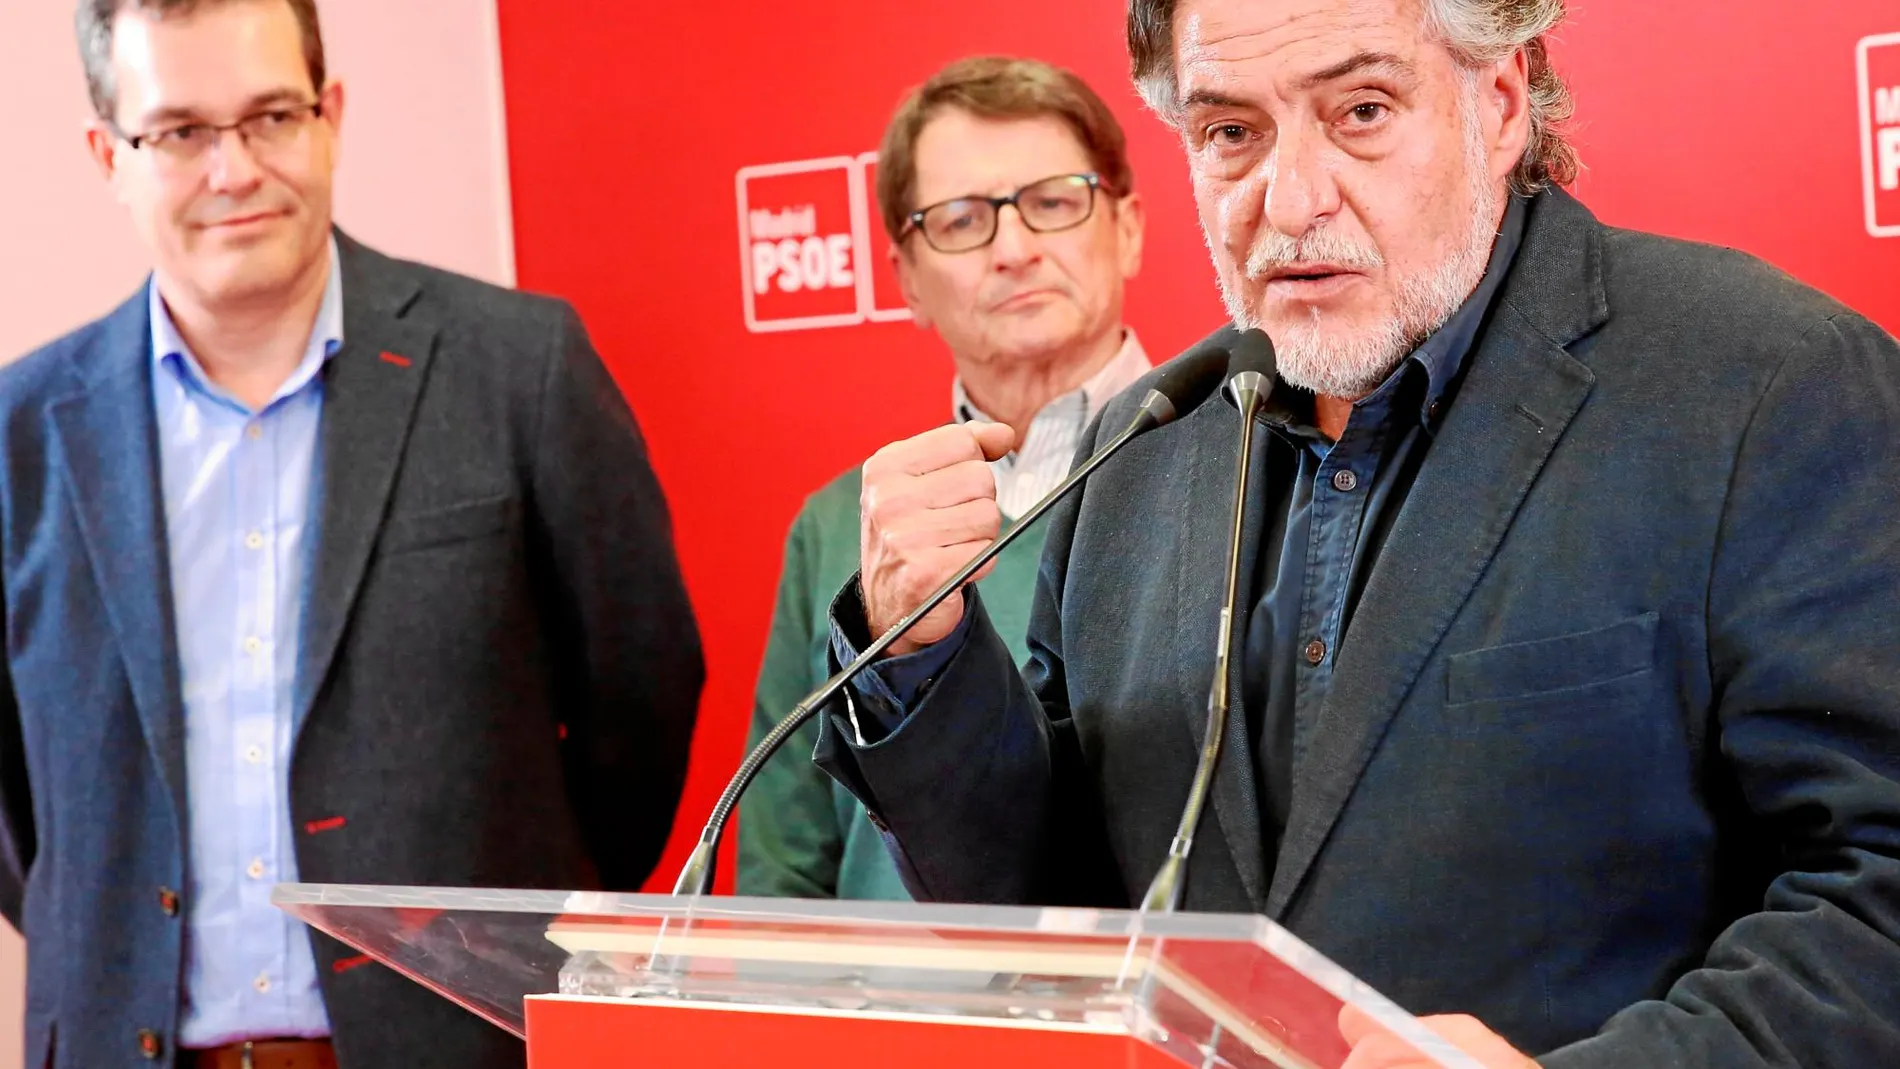 El candidato del PSOE al Ayuntamiento de Madrid, Pepu Hernández, anoche, tras ganar las primarias